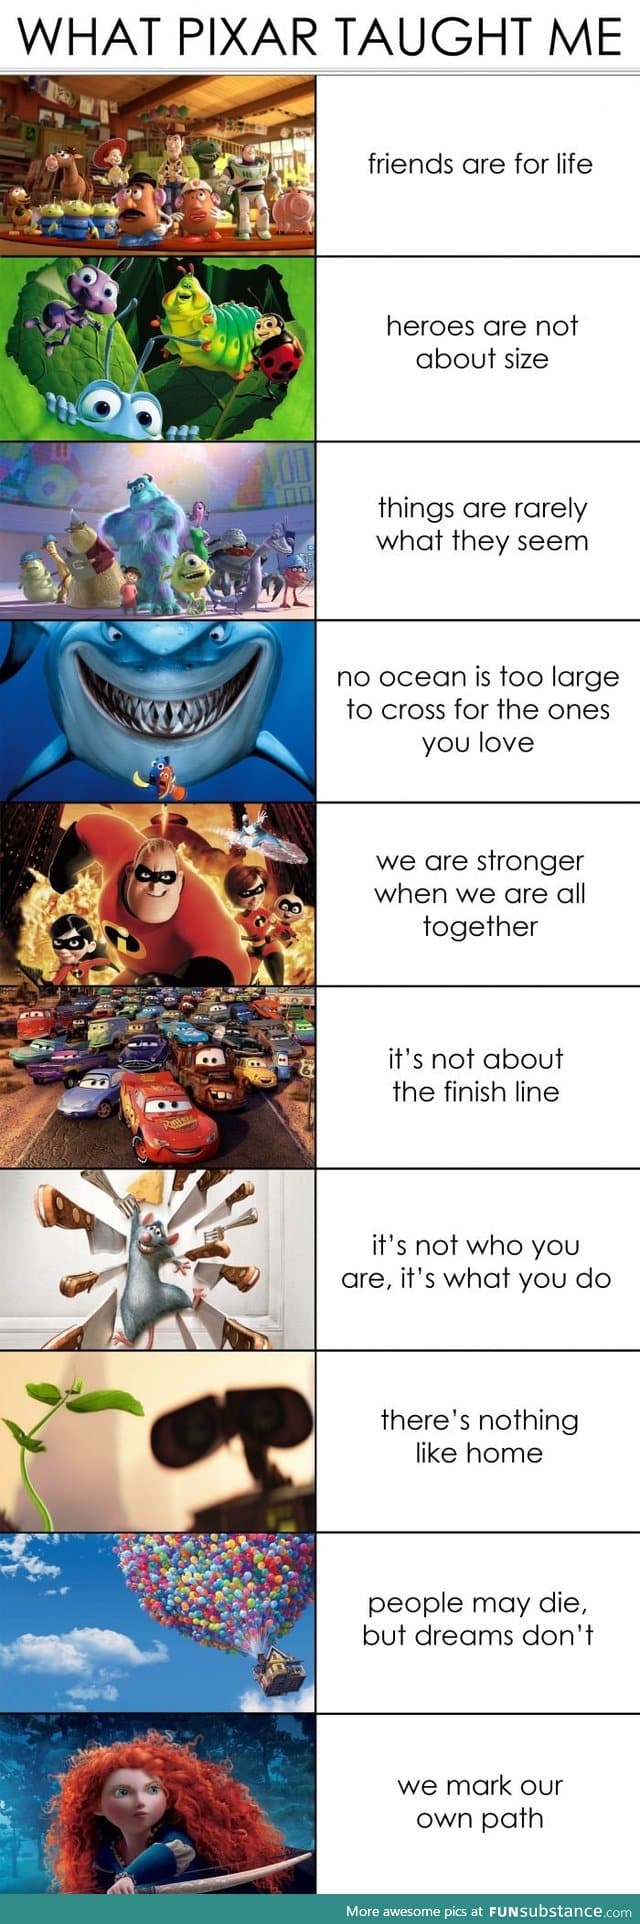 What pixar has taught me